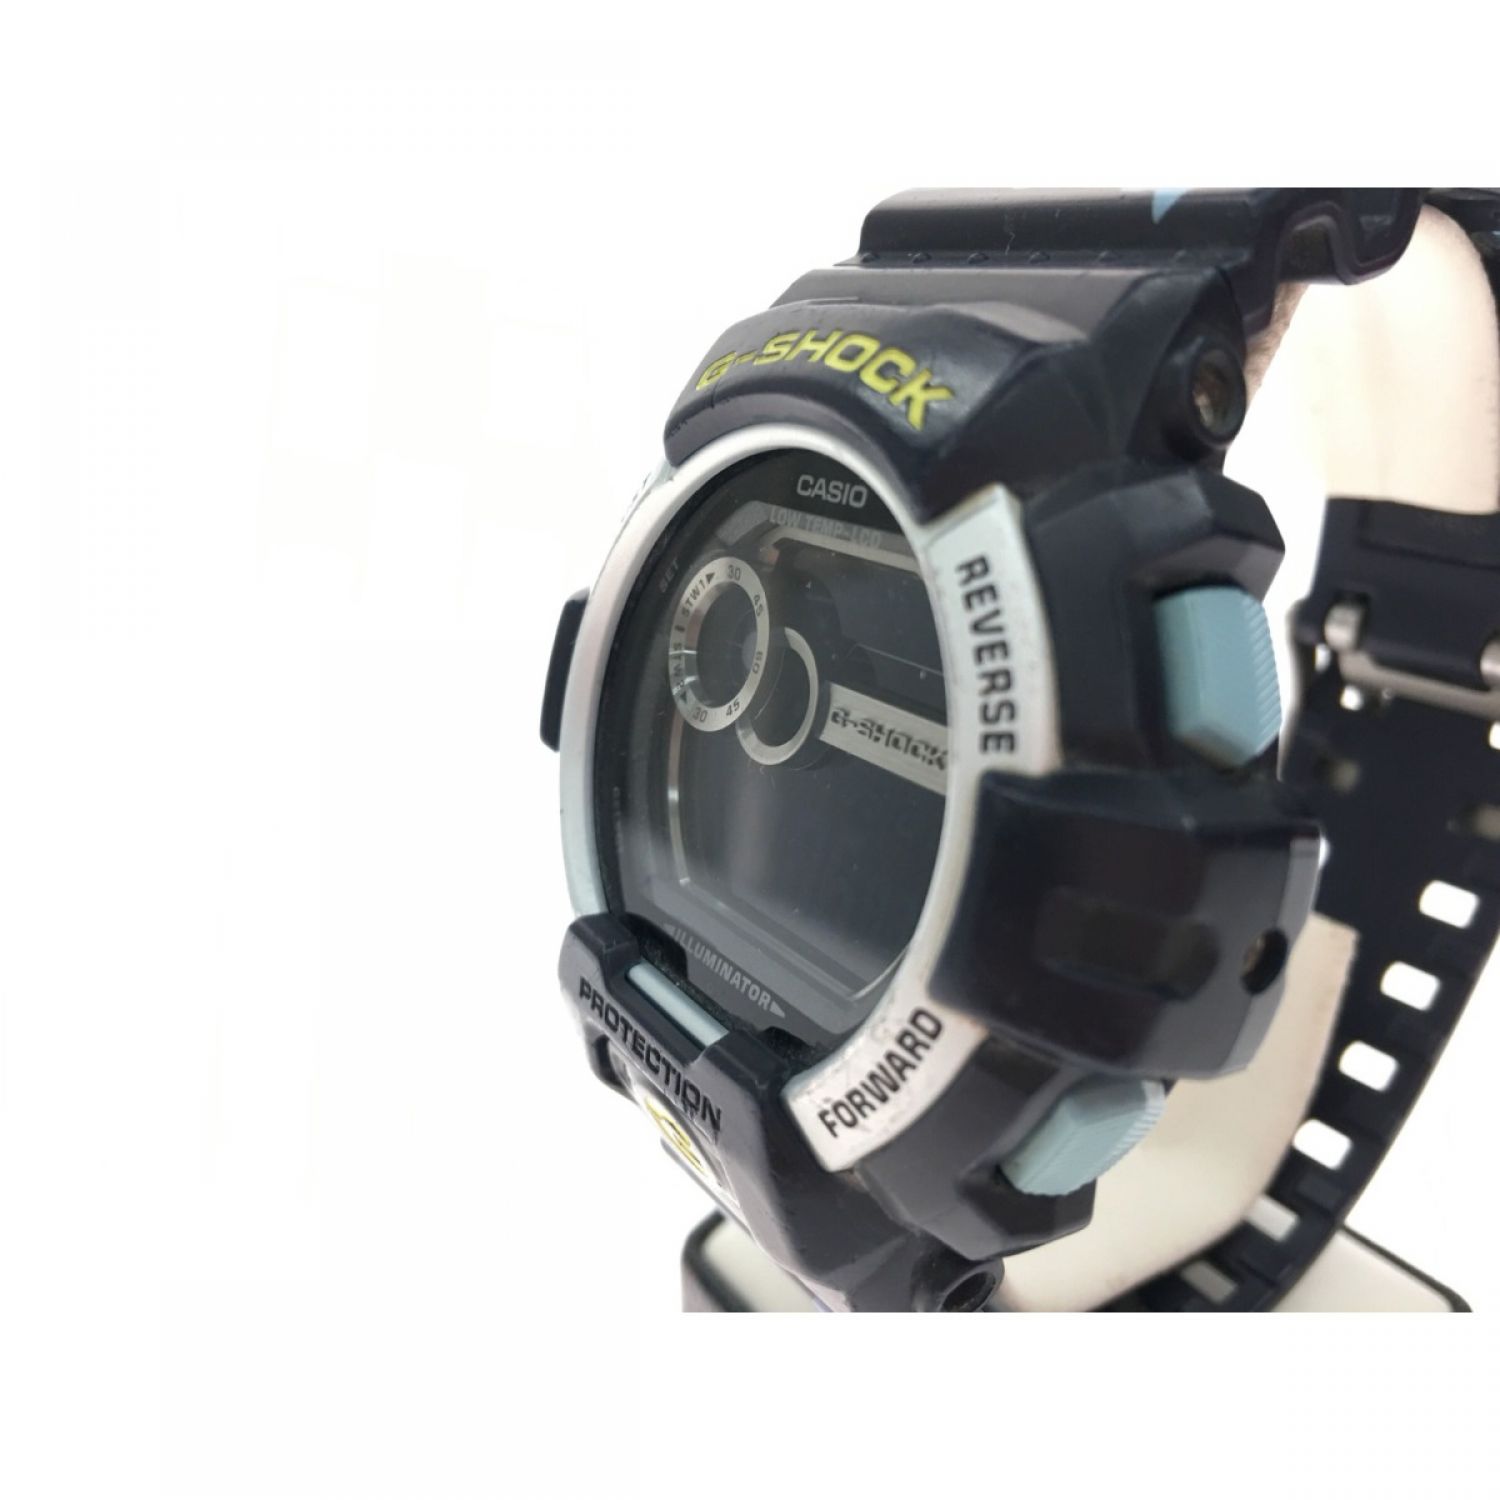 【限定品】G-SHOCK メンズ 腕時計 GLS-8900CM-1JF